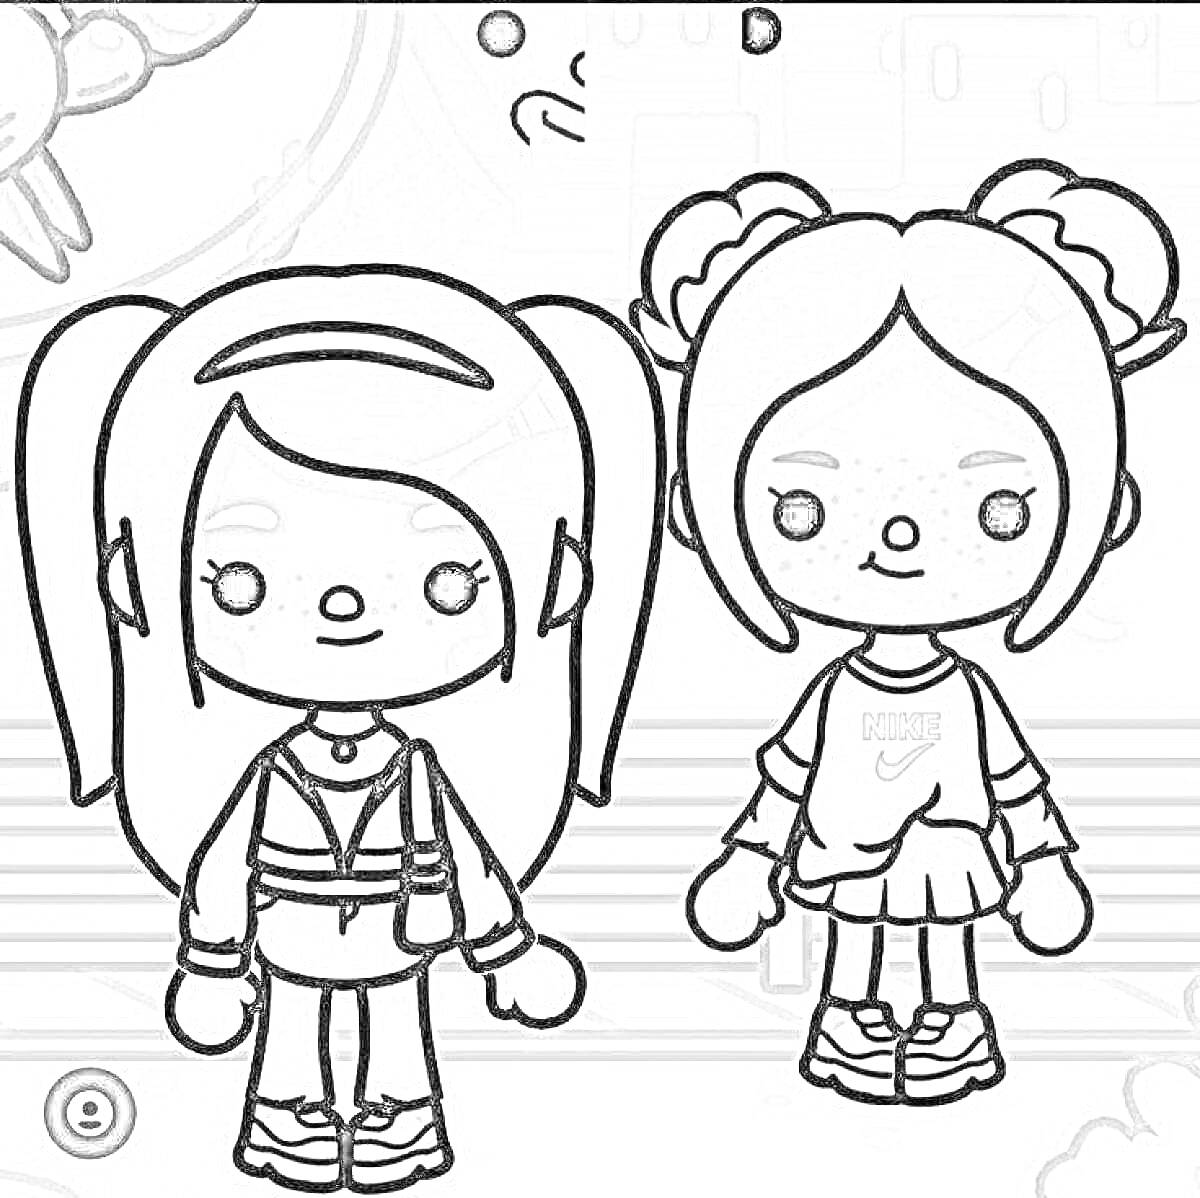 Раскраска Два персонажа Тока Бока с белыми волосами и одеждой спортивного стиля: один персонаж в светлой ветровке и брюках, другой в светлой футболке и юбке. Окружающие элементы включают фон с серым небом и зданиями.